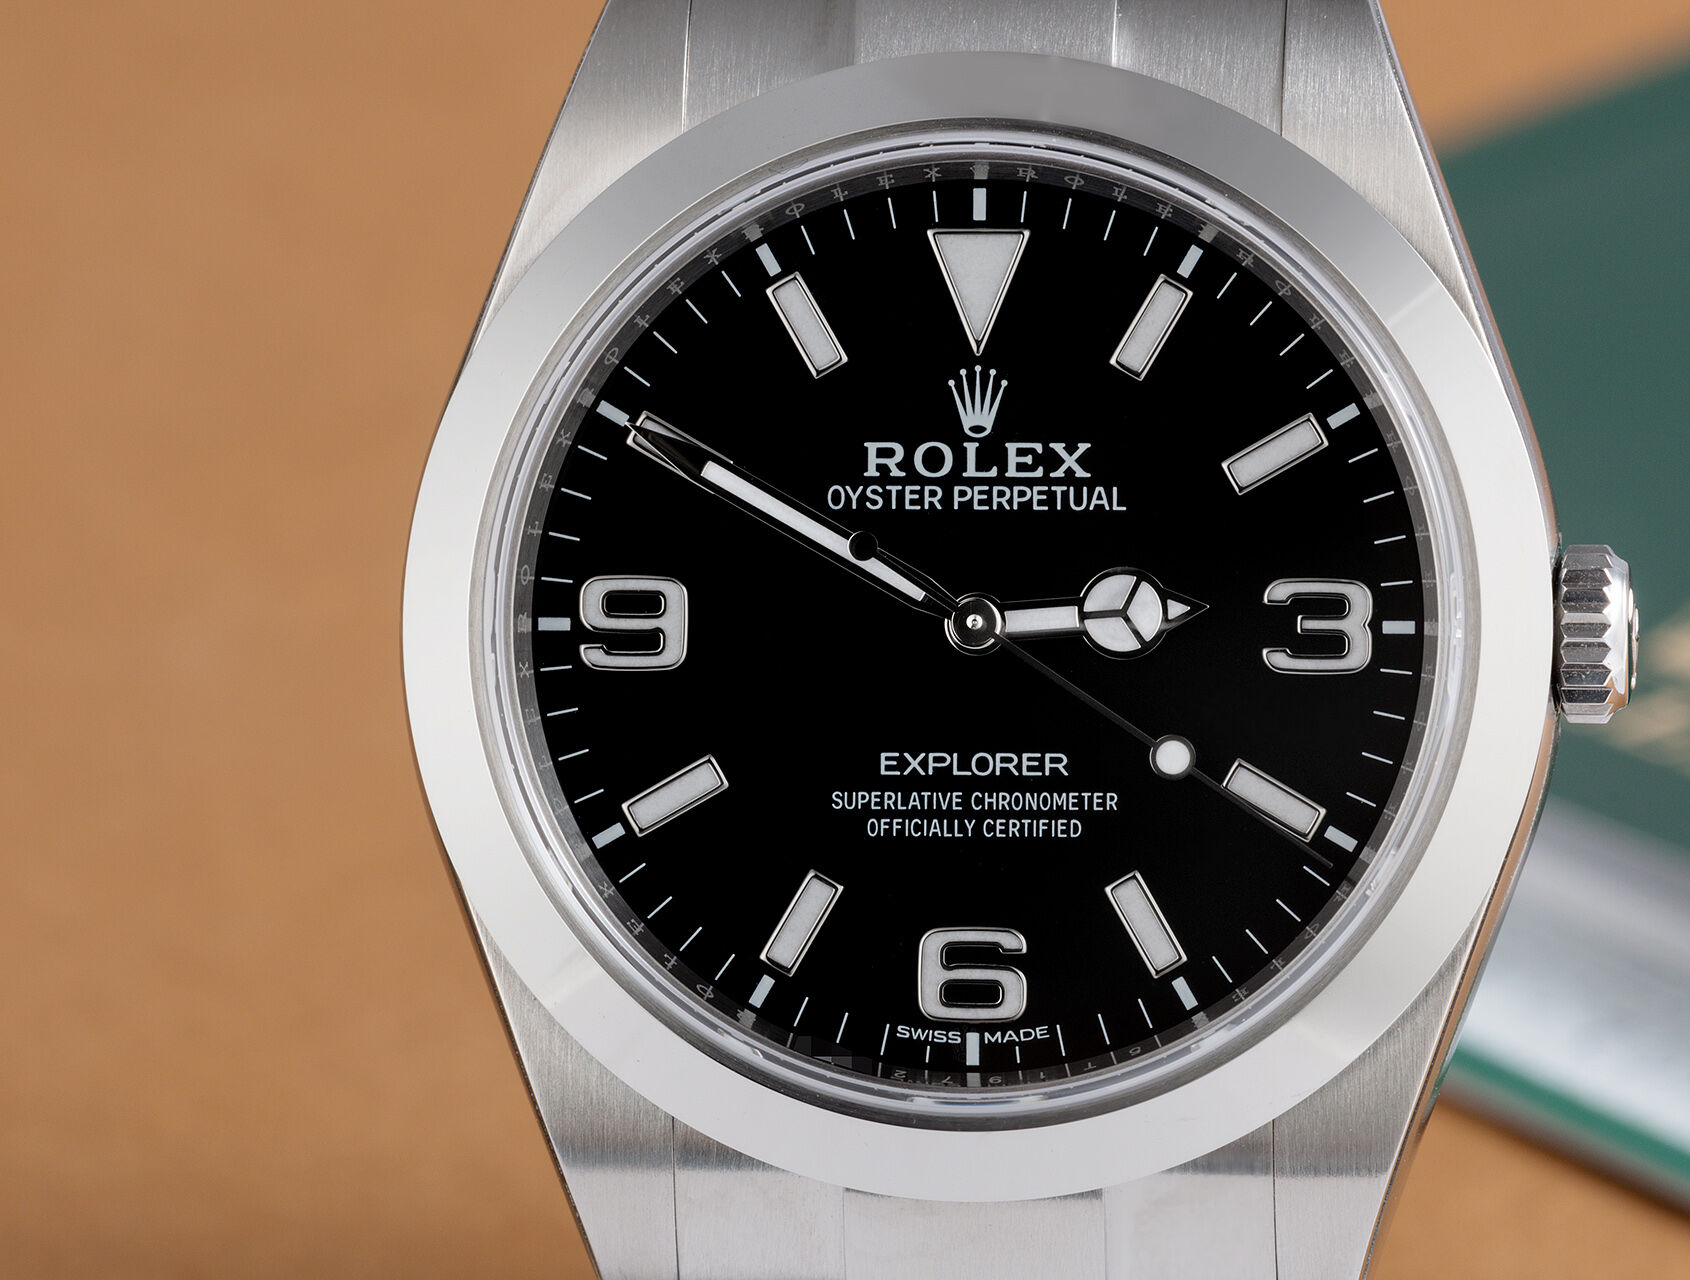 ref 214270 | 5 Year Rolex Warranty | Rolex Explorer